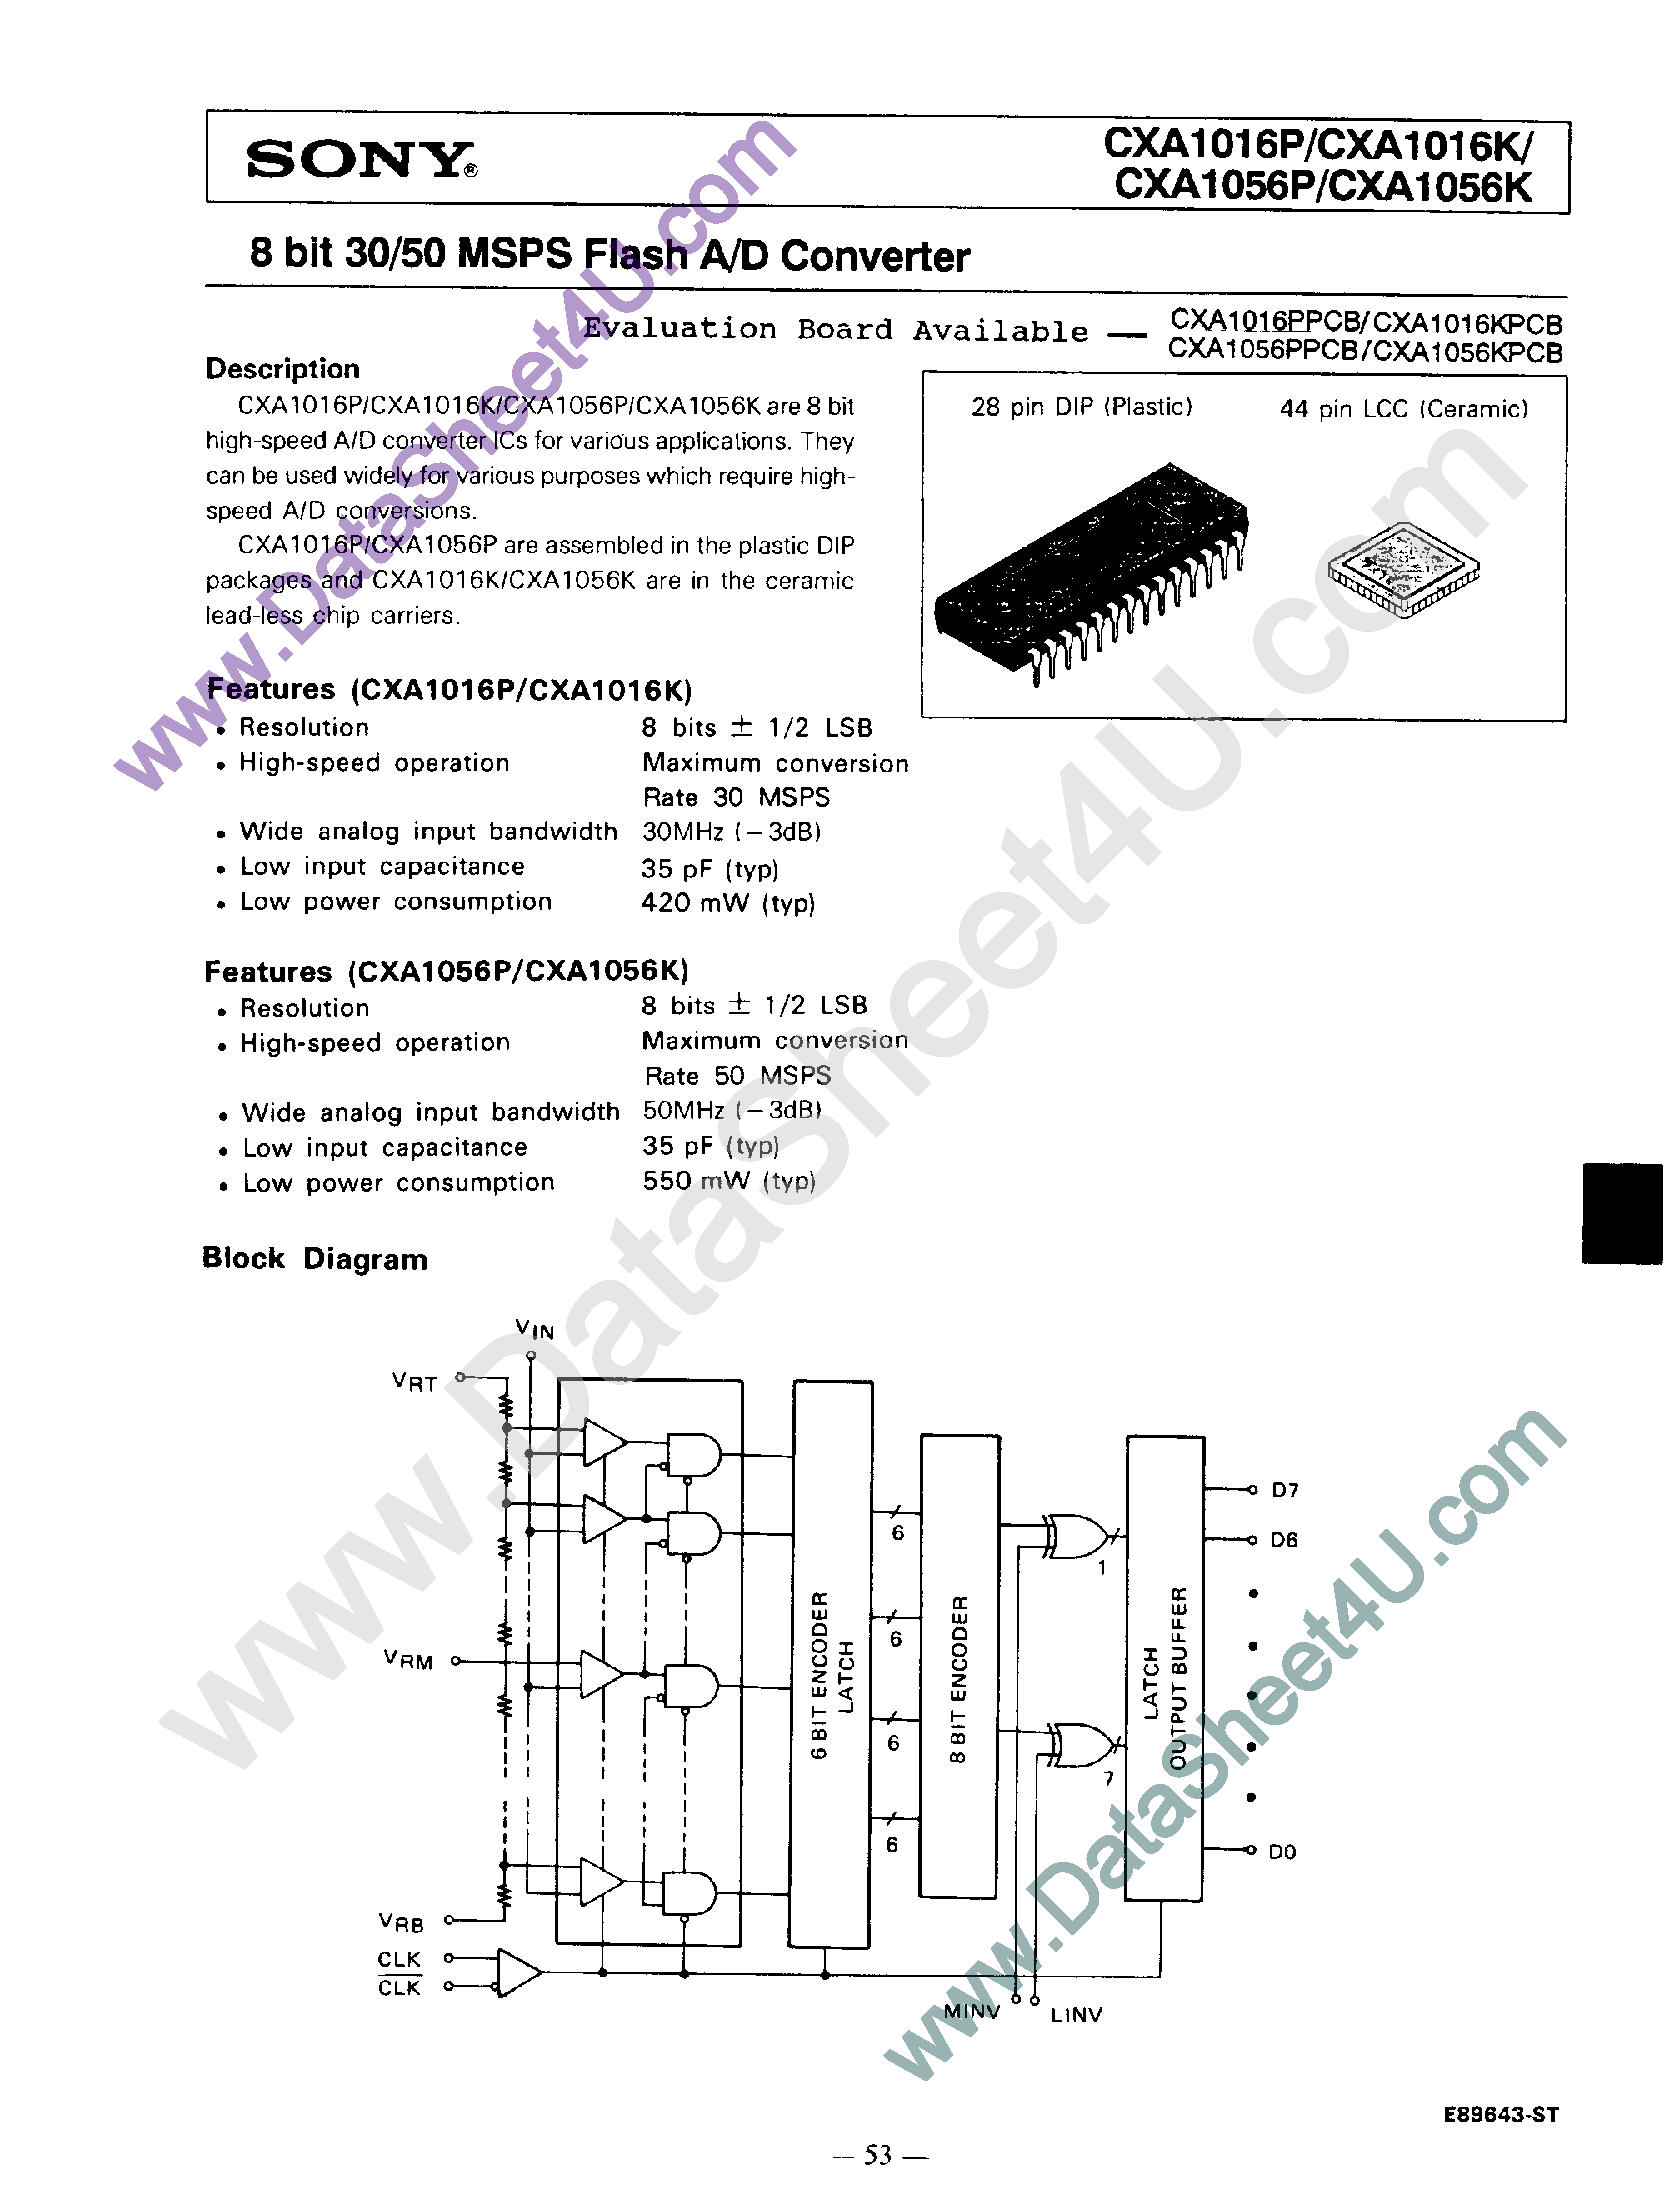 Даташит CXA1016 - (CXA1016 / CXA1056) 8 Bit 30/50 MSPS Flash A/D Converter страница 1